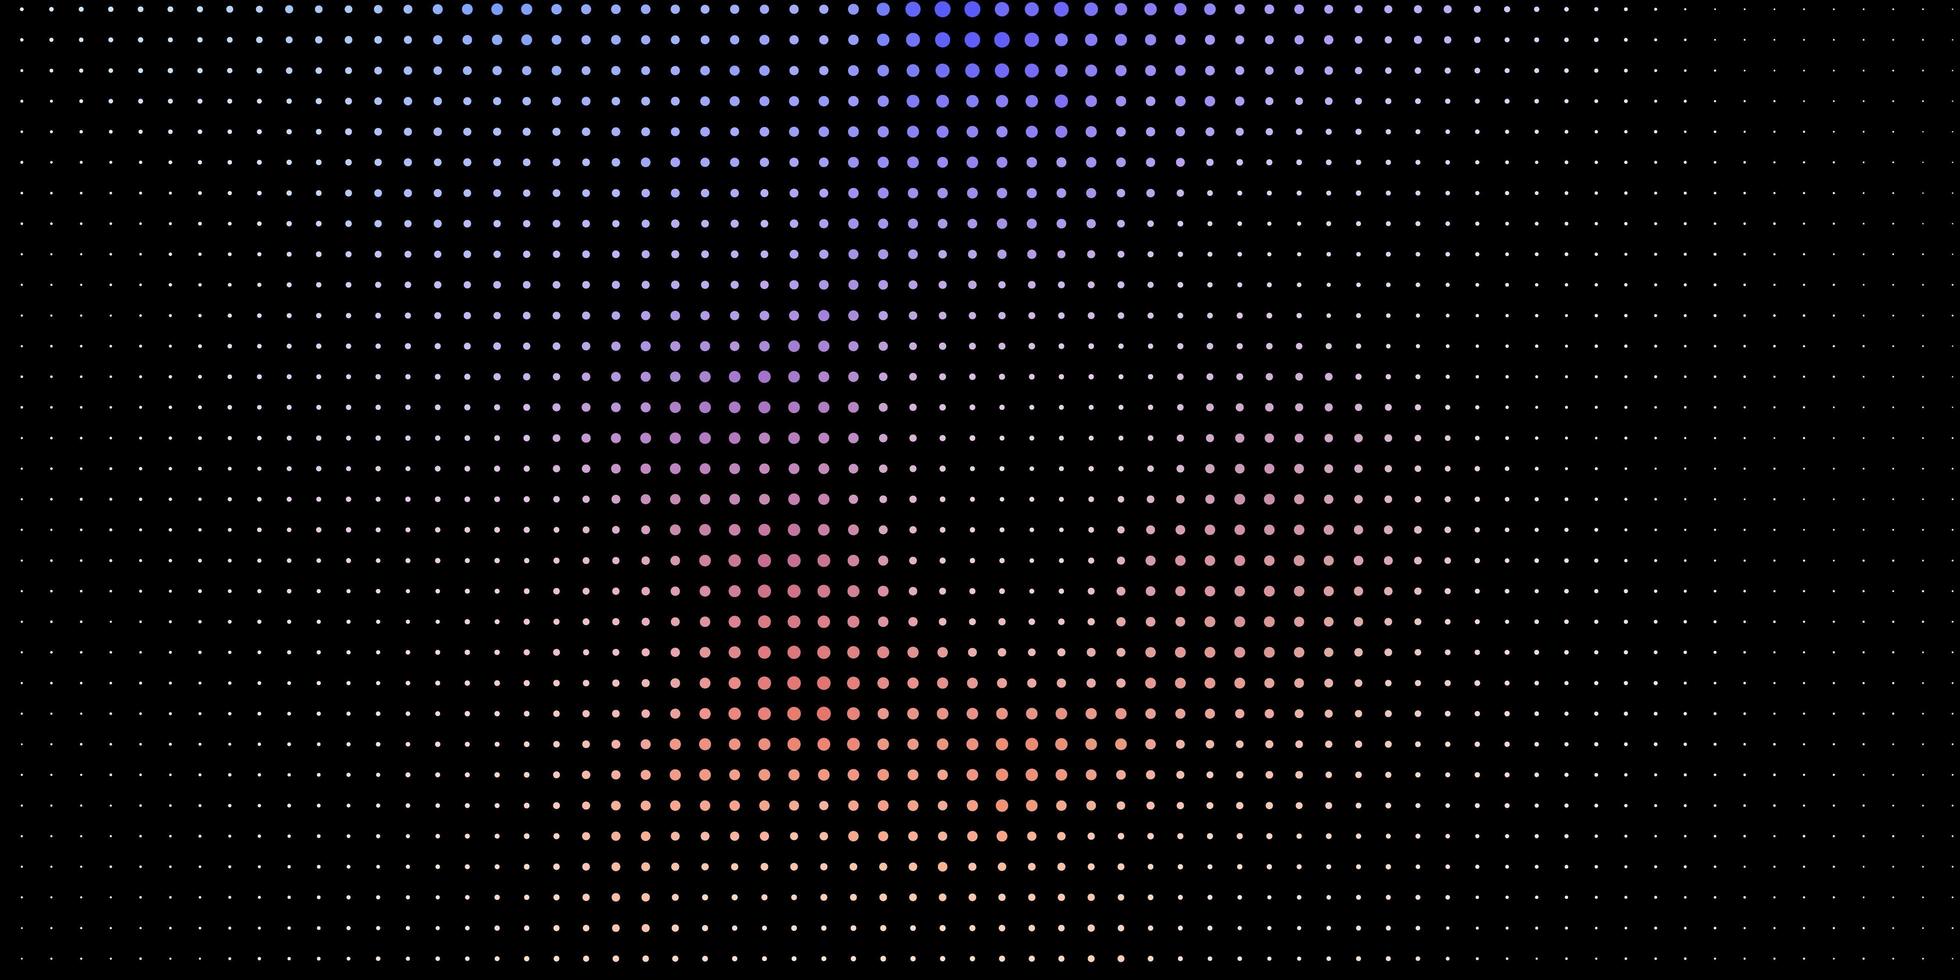 ljusblå bakgrund med prickar. vektor